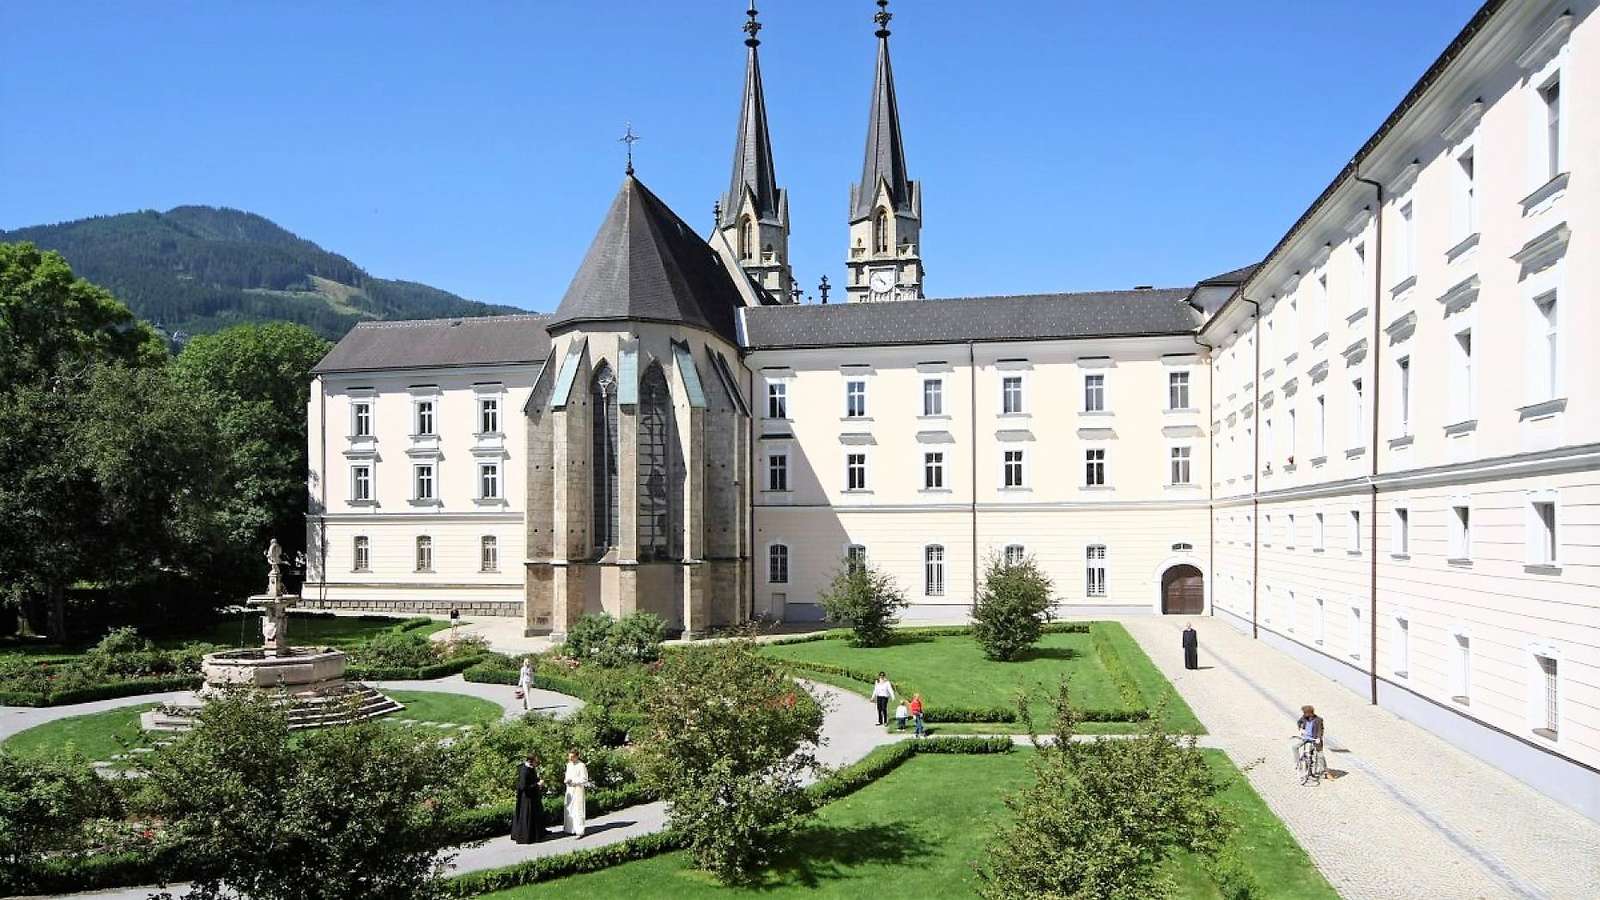 Admont Abbey Štýrsko Rakousko skládačky online